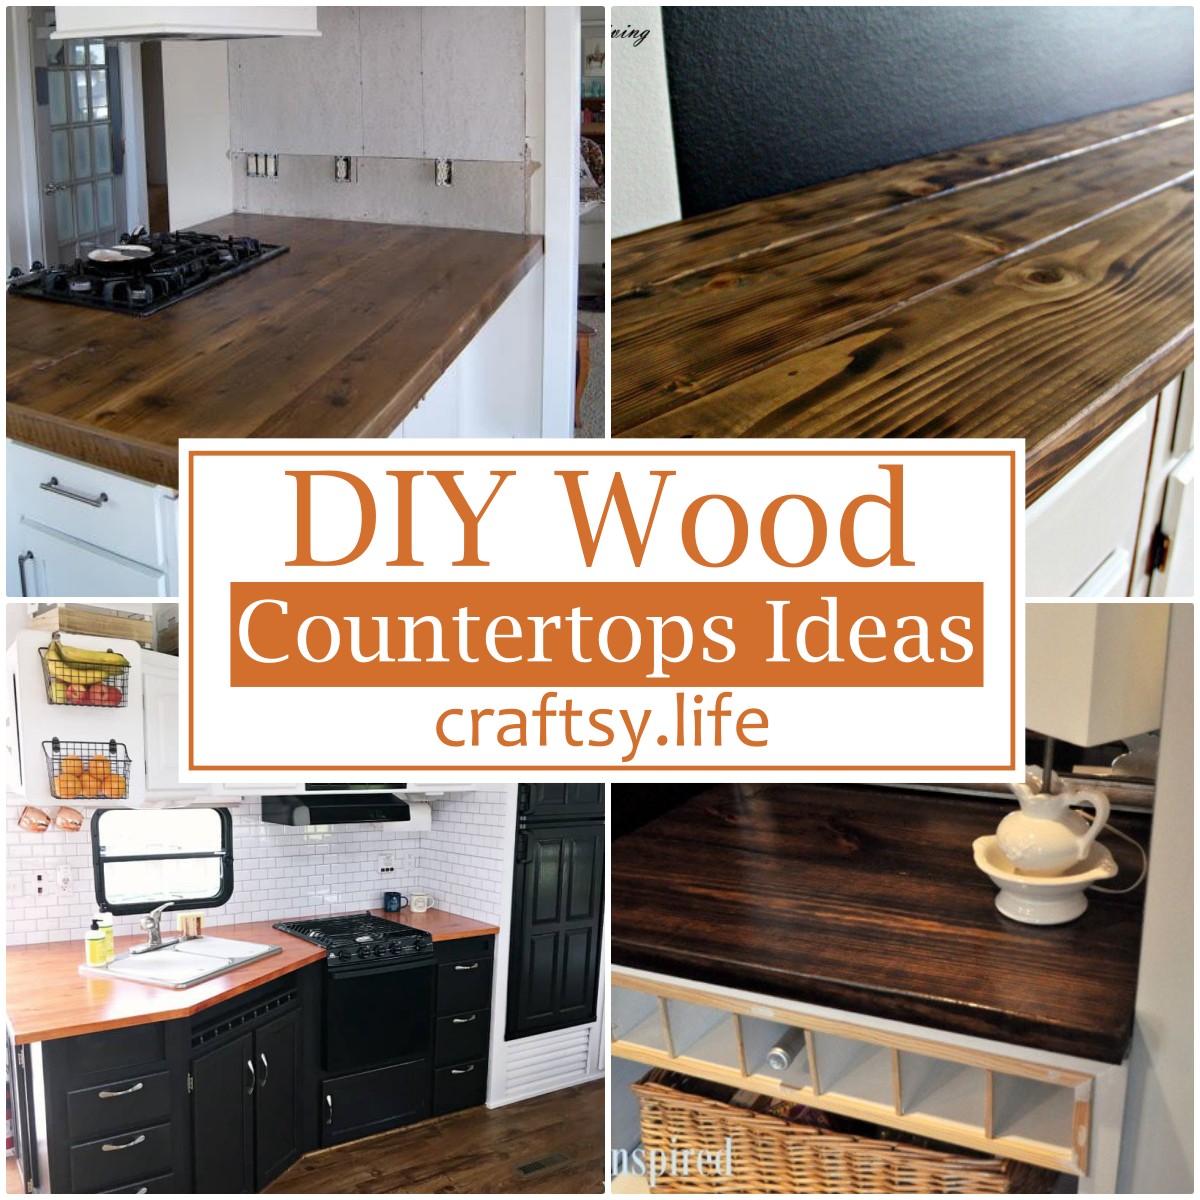 DIY Wood Countertops Ideas